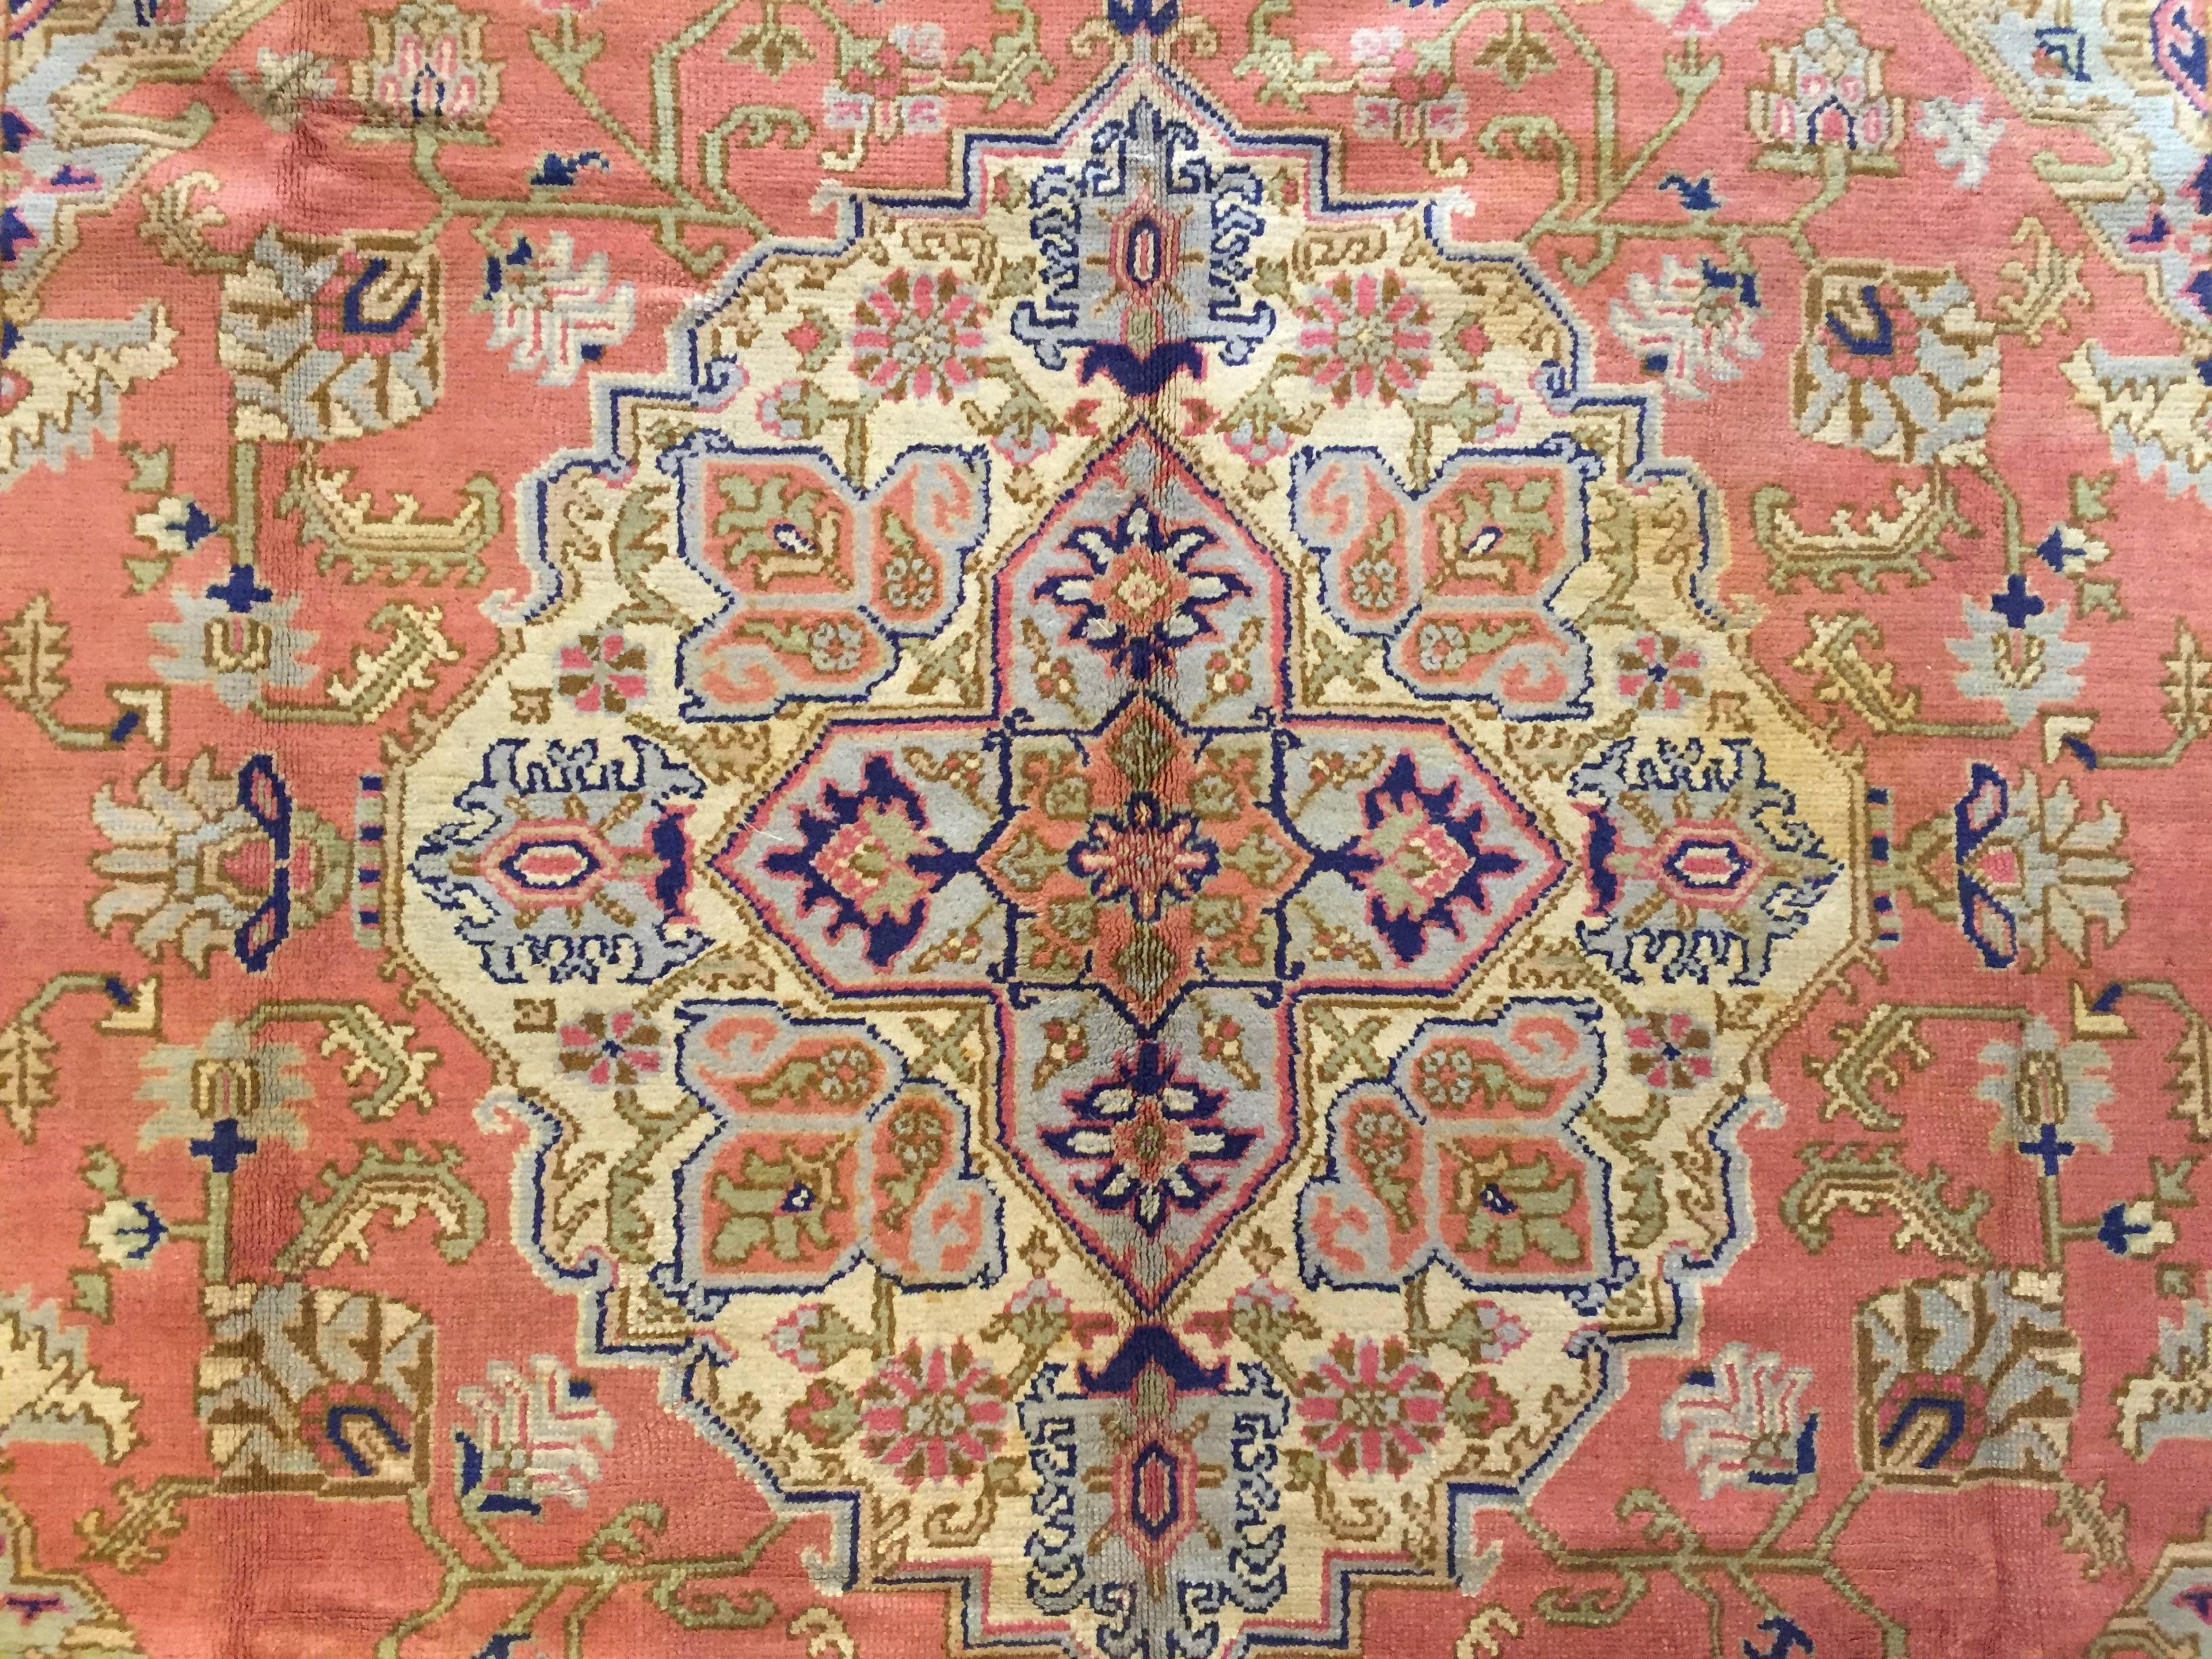 Oushak-Teppiche stammen aus der kleinen Stadt Oushak in Zentralwestanatolien, gleich südlich von Istanbul. Anders als die meisten türkischen Teppiche wurden die Oushak-Teppiche stark von der persischen Tradition beeinflusst. Fast seit den Anfängen